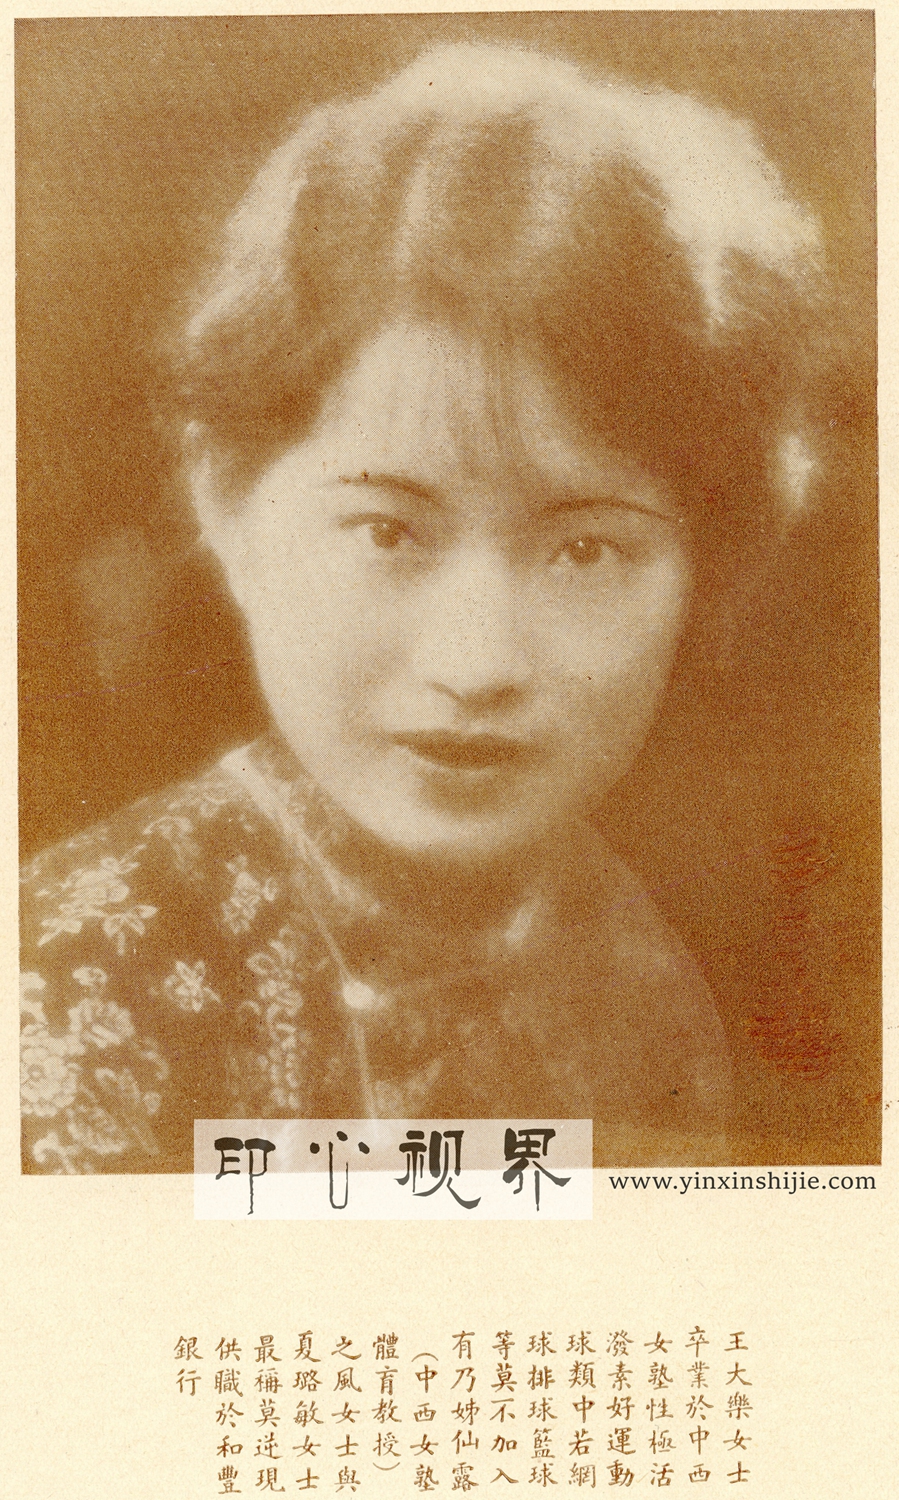 ＂爱好运动＂的王大乐女士--1930年《闺秀影集》